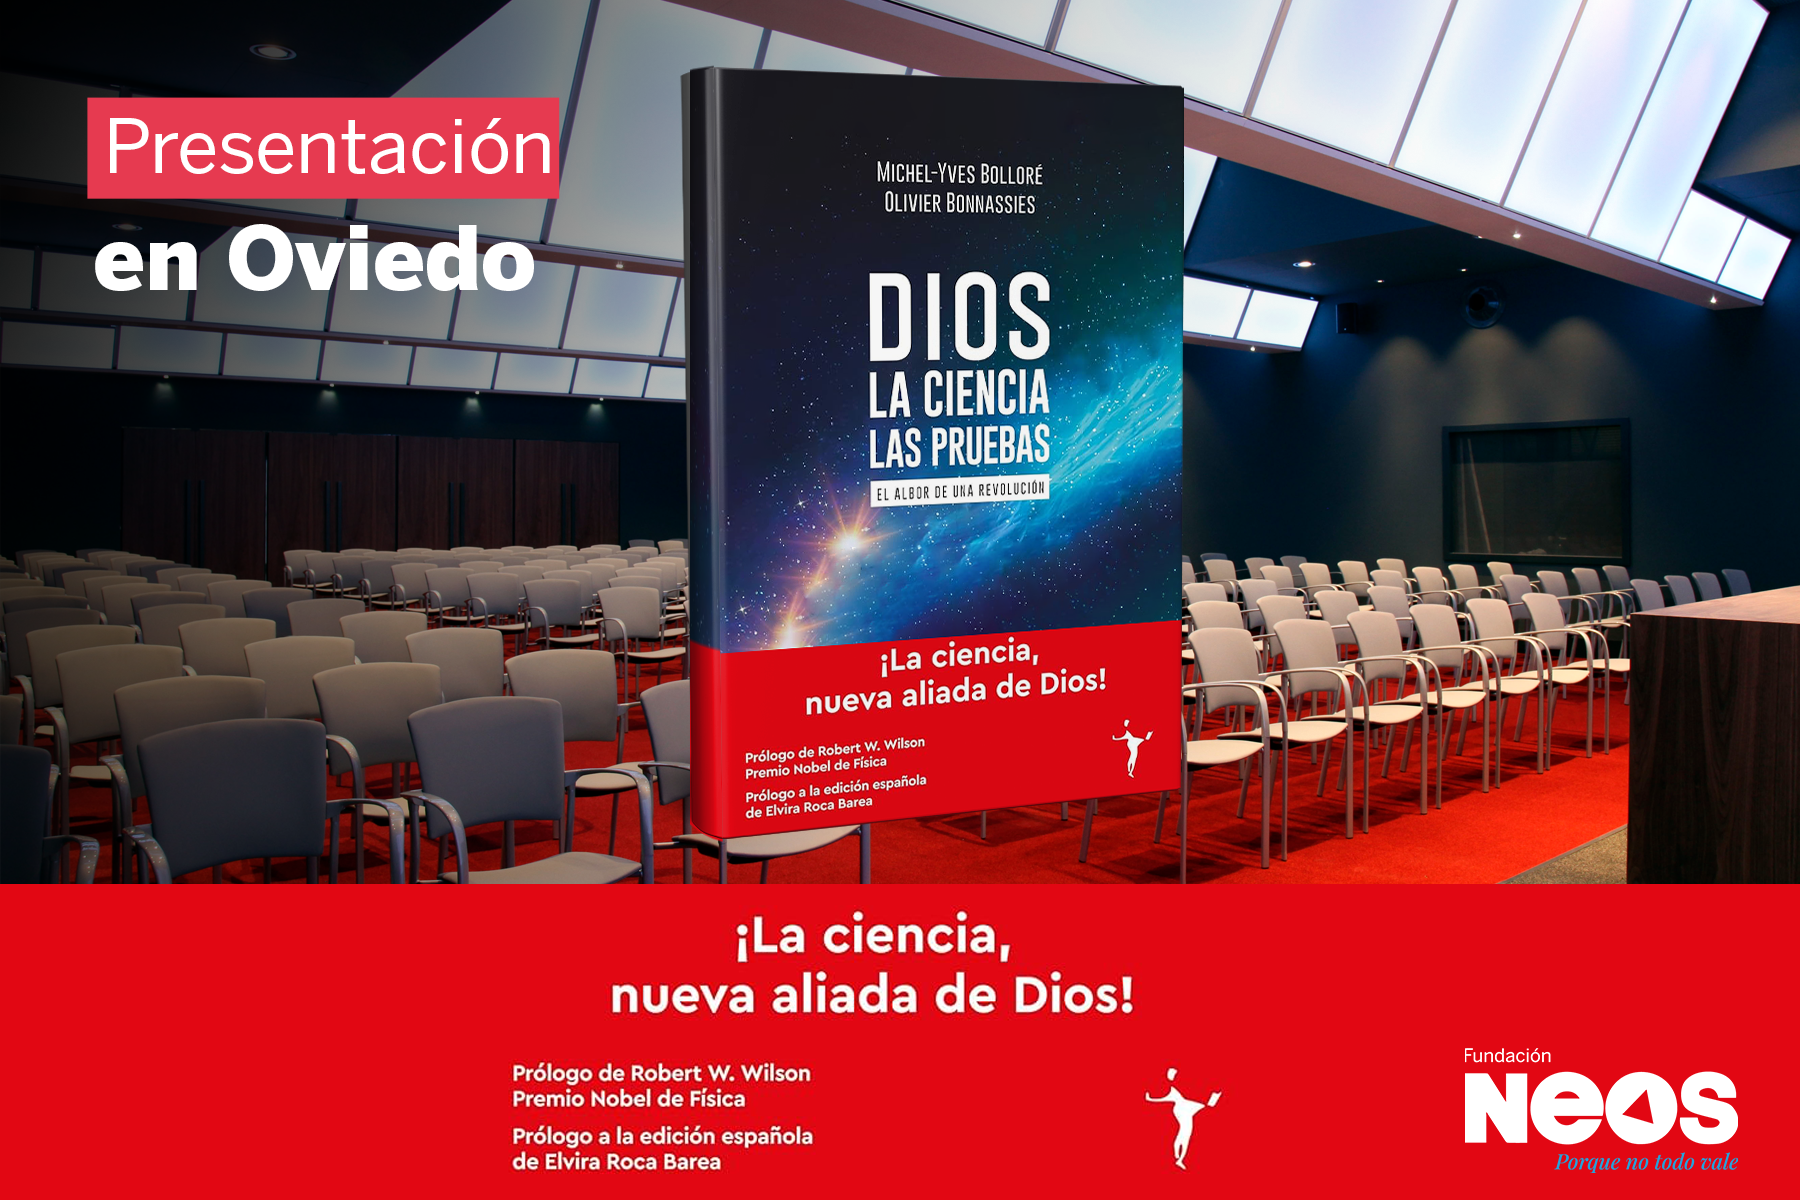 Eventos NEOS  Presentación del libro Dios. La ciencia. Las pruebas -  Oviedo - Neos España